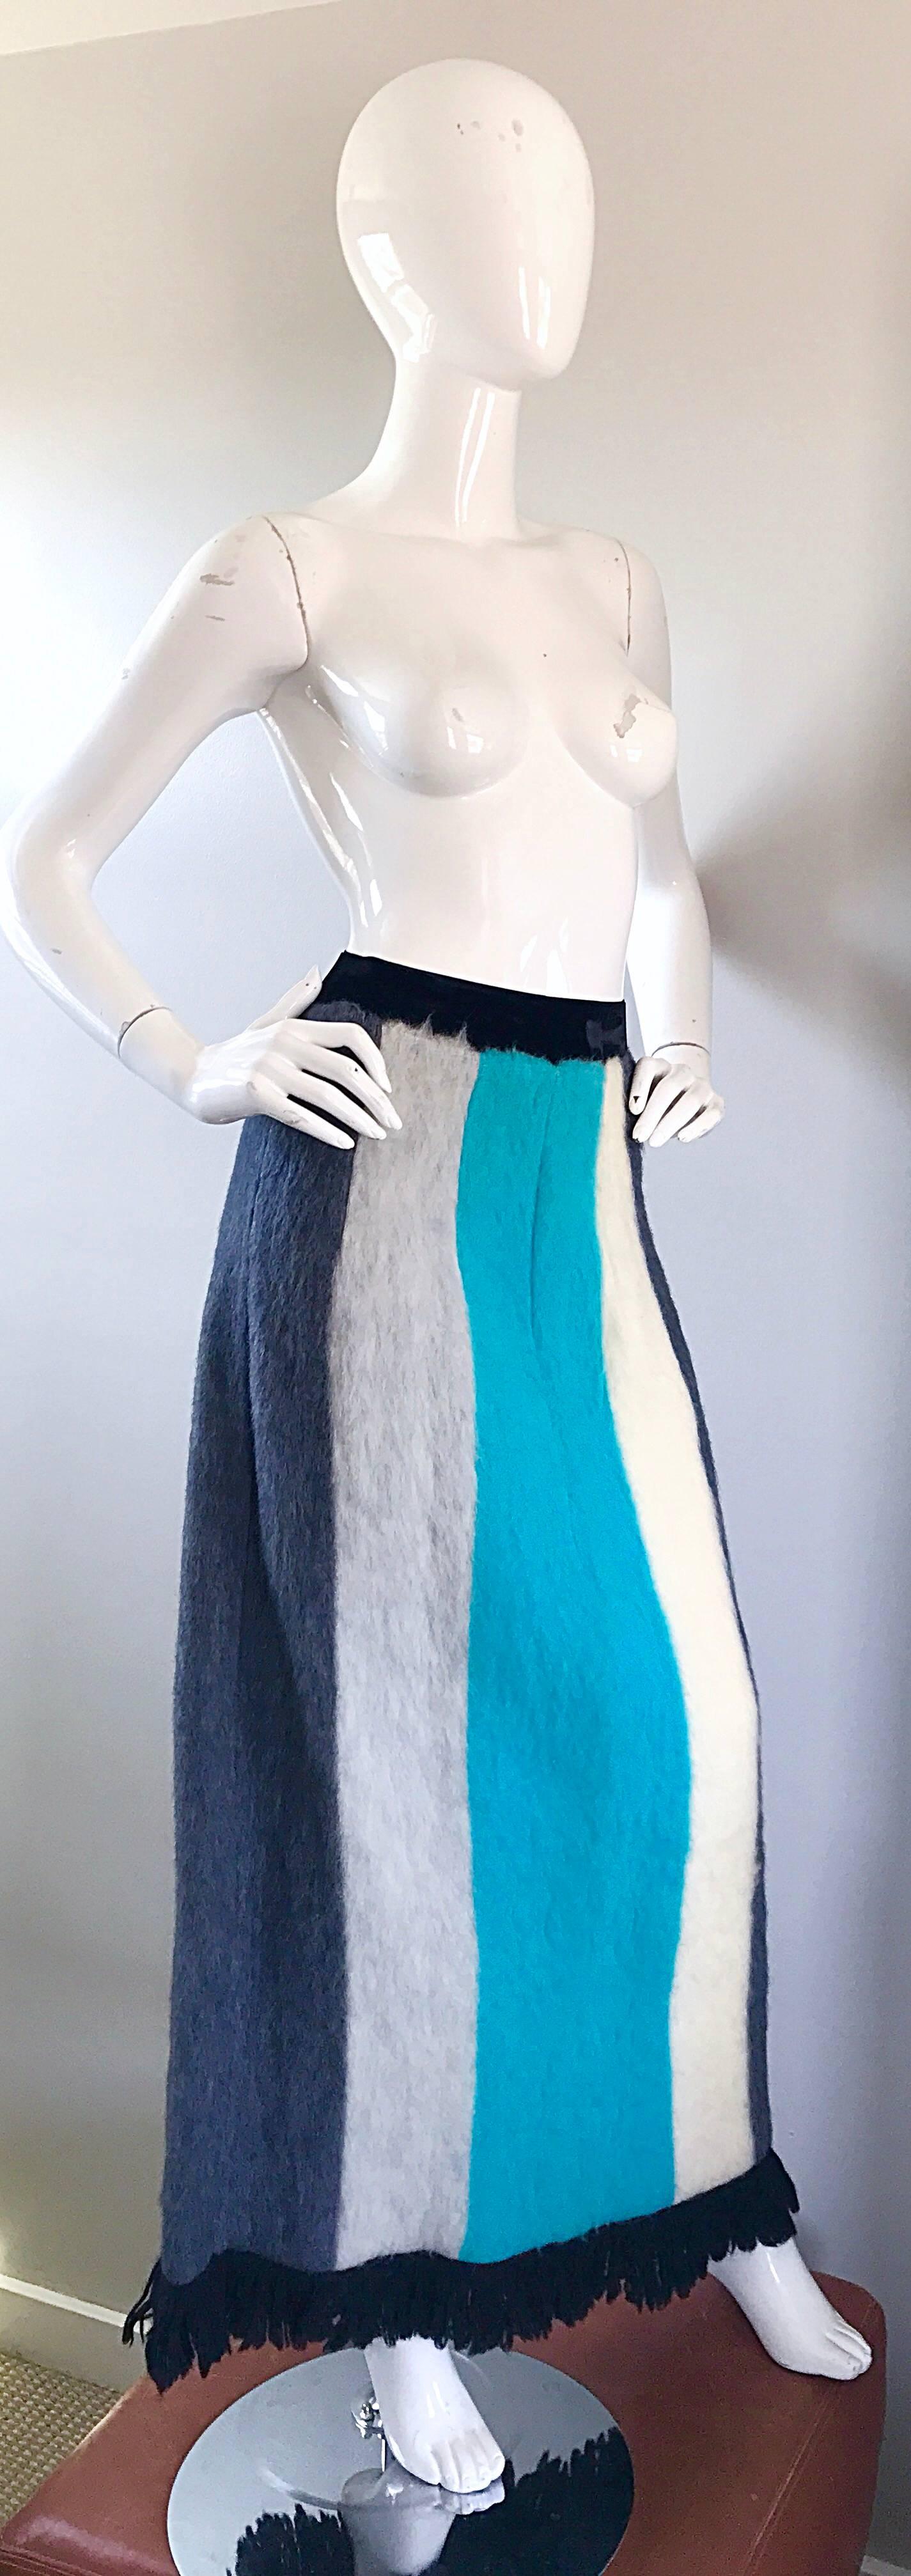 Spectaculaire jupe maxi OHRBACH'S des années 60 à rayures en mohair angora bleu turquoise, ivoire, bruyère et gris ! Ceinture en velours noir extensible. Frange en laine noire à l'ourlet. Le tissu super doux est agréable au toucher. Entièrement